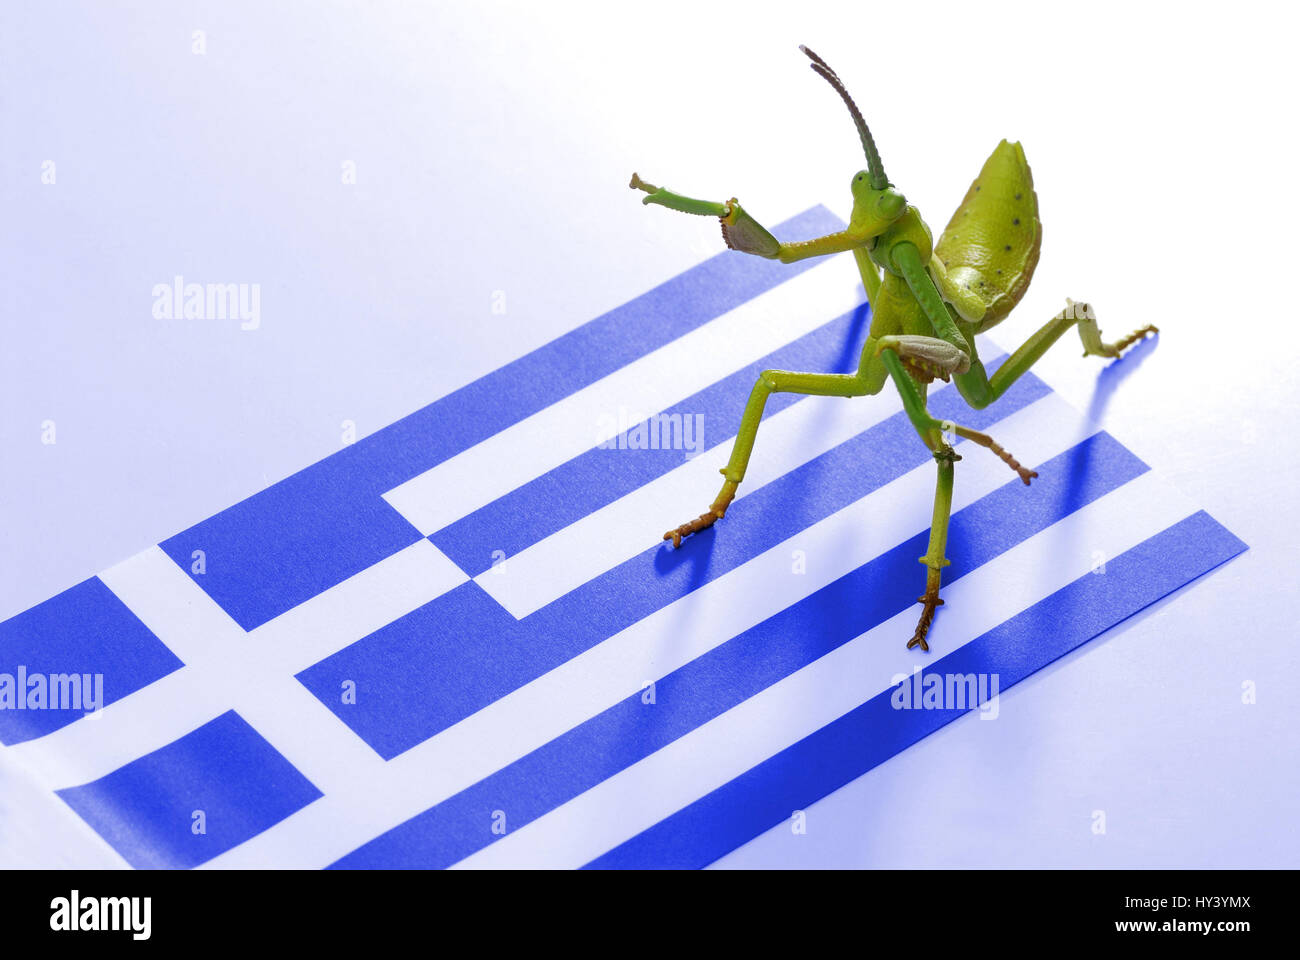 Grasshopper as a symbol of Hedge fund on a flag of Greece, Heuschrecke als Symbol von Hedge-Fonds auf einer Fahne von Griechenland Stock Photo